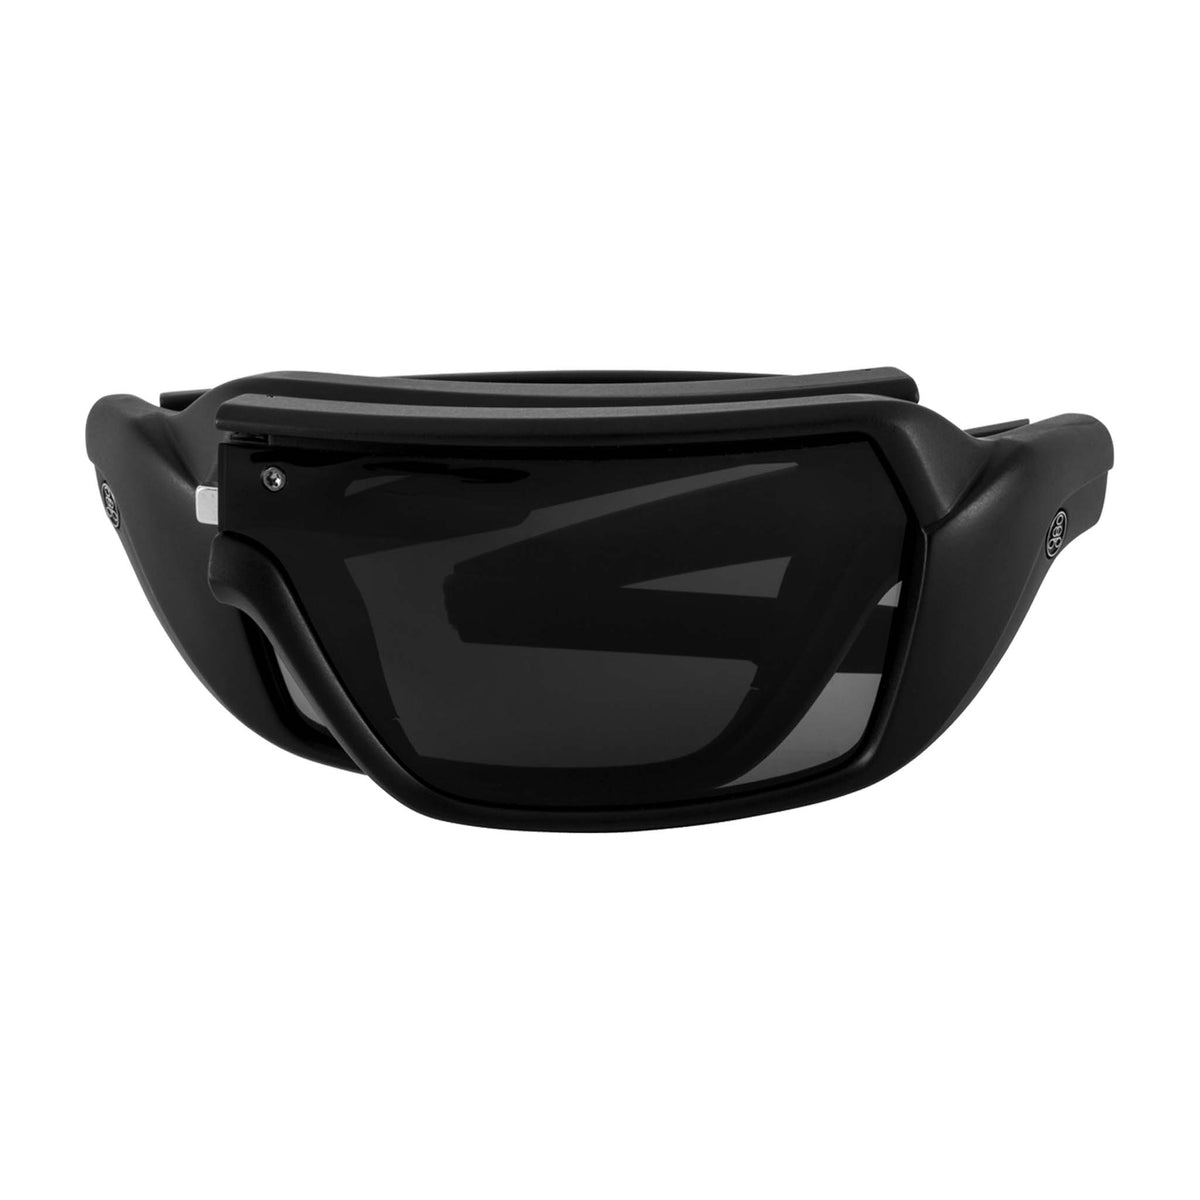 Popticals, Premium Compact Sunglasses, PopStorm, 010060-BMGP, Polarized Sunglasses, Matte Black Frame, Gray Lenses, Compact View